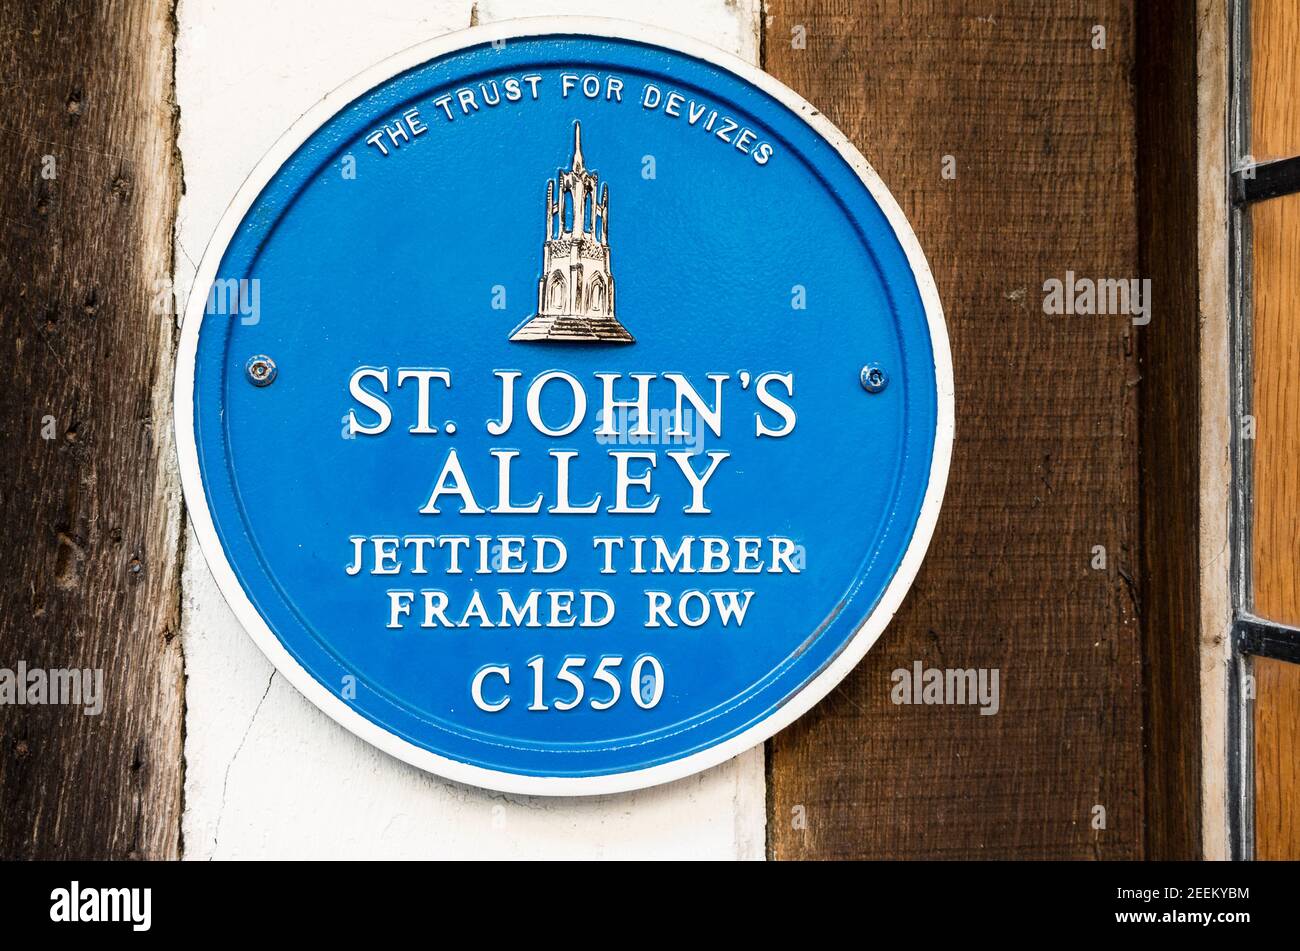 Plaque bleue fournie par le Trust for Devozes enregistrant le Début de l'histoire de certains bâtiments historiques de l'allée St James Devizes Wiltshire Angleterre Royaume-Uni Banque D'Images